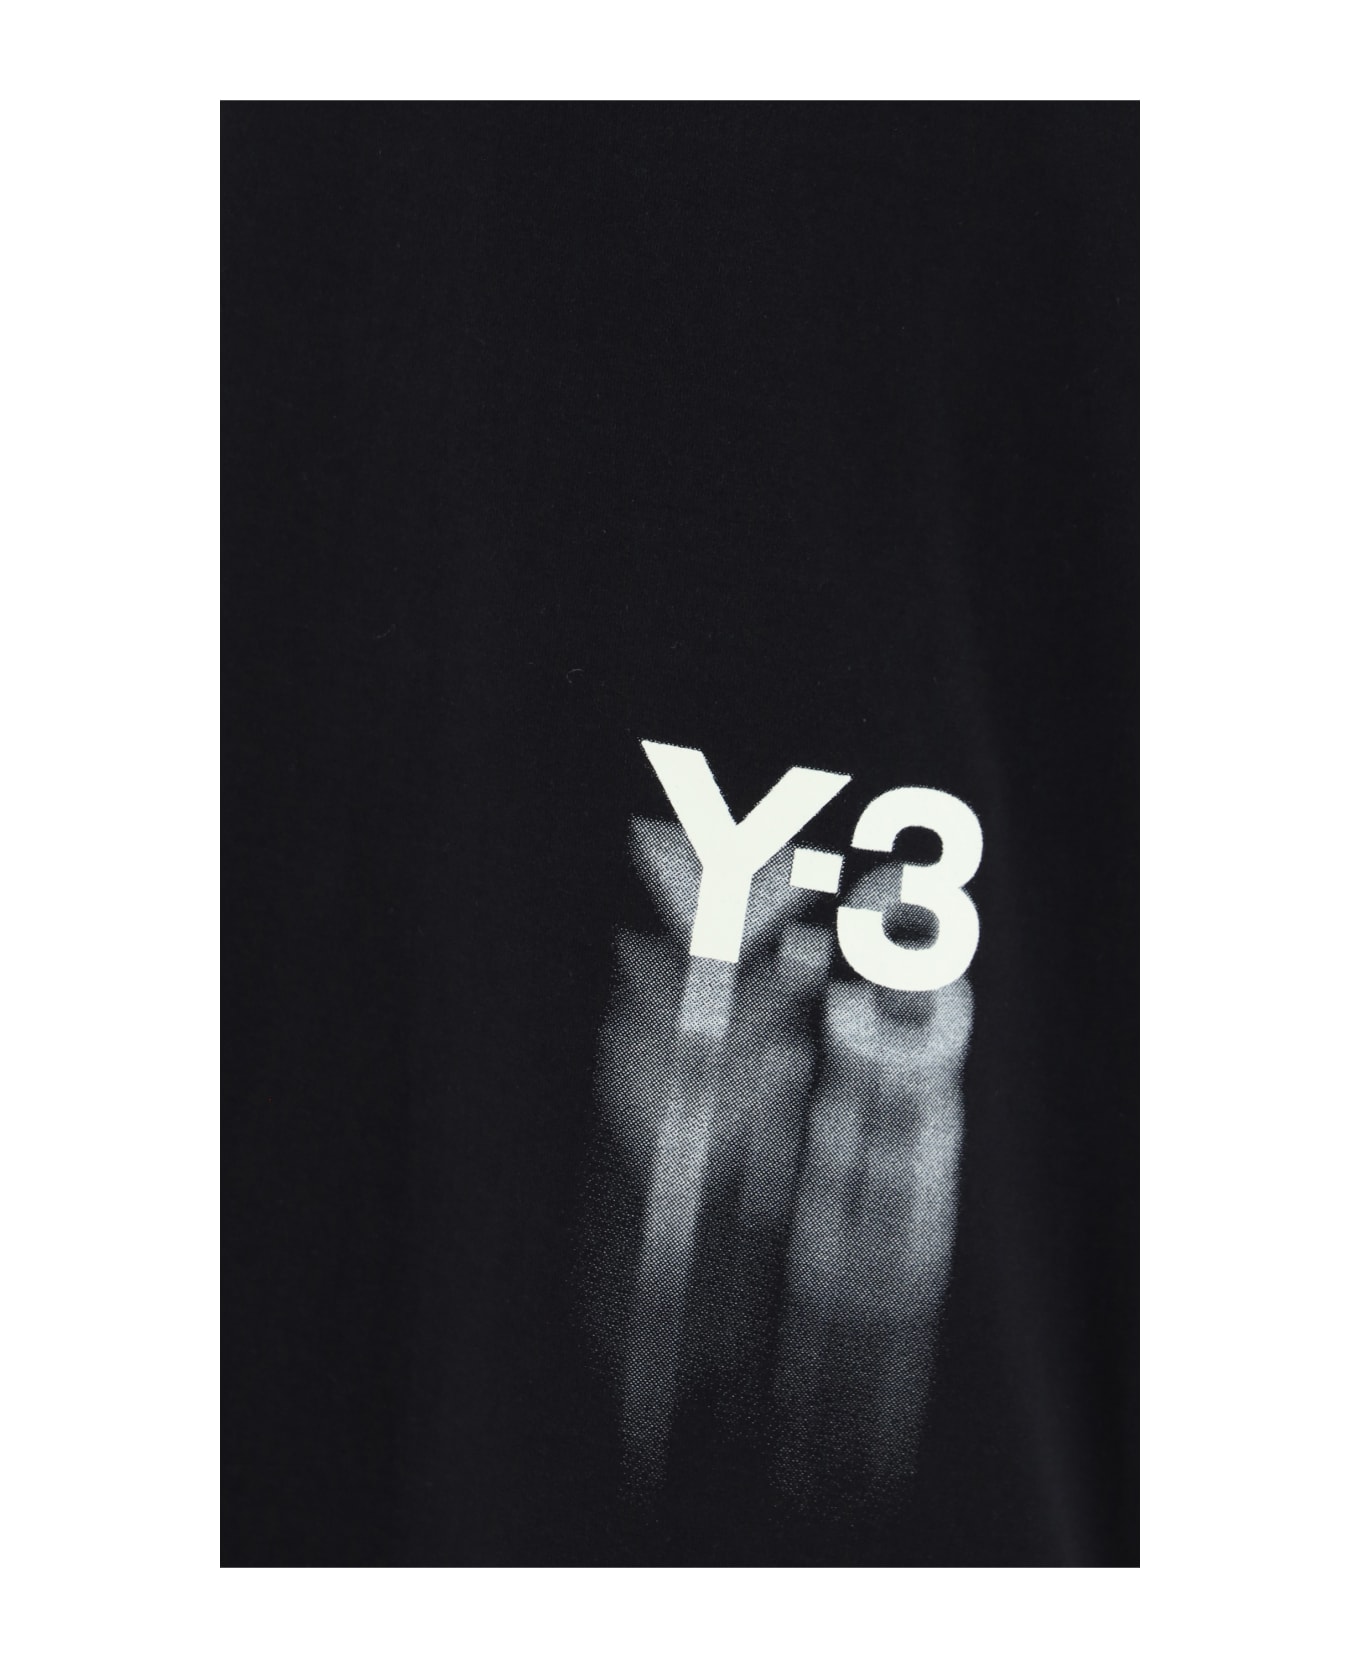 Y-3 T-shirt T-Shirt - BLACK